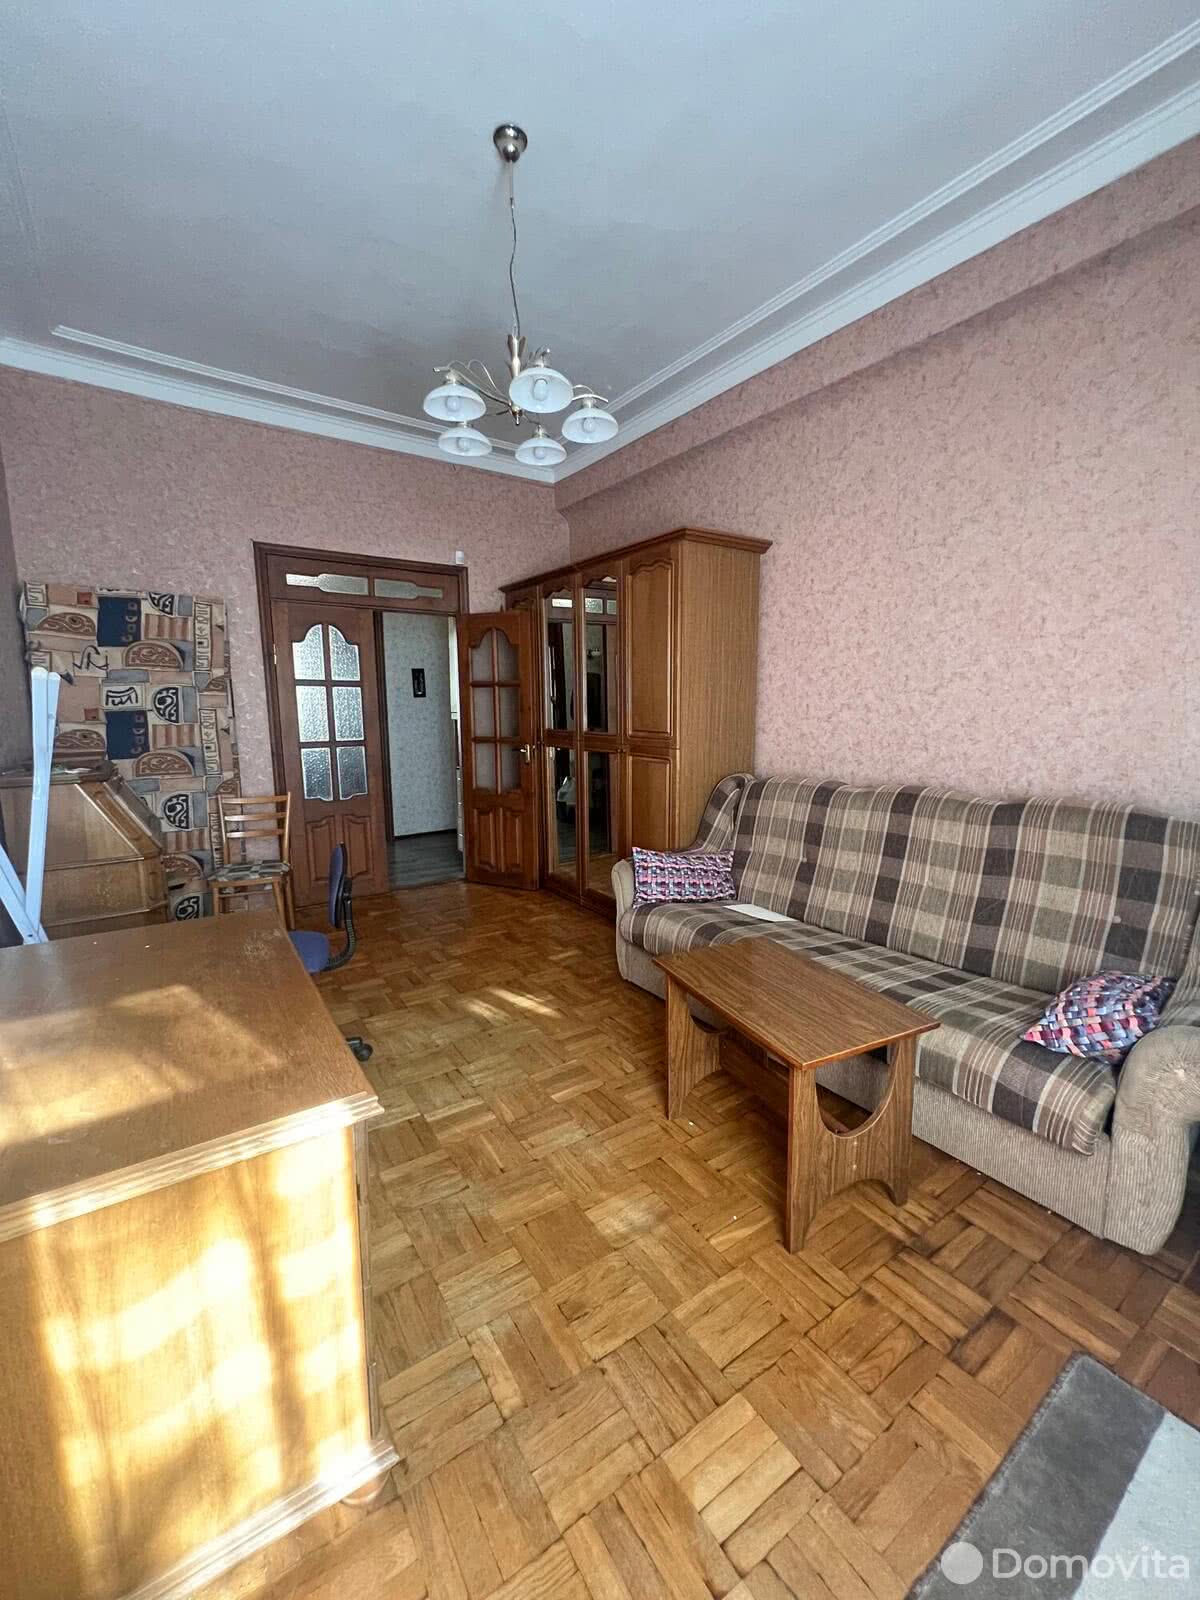 Цена продажи квартиры, Витебск, ул. Суворова, д. 22